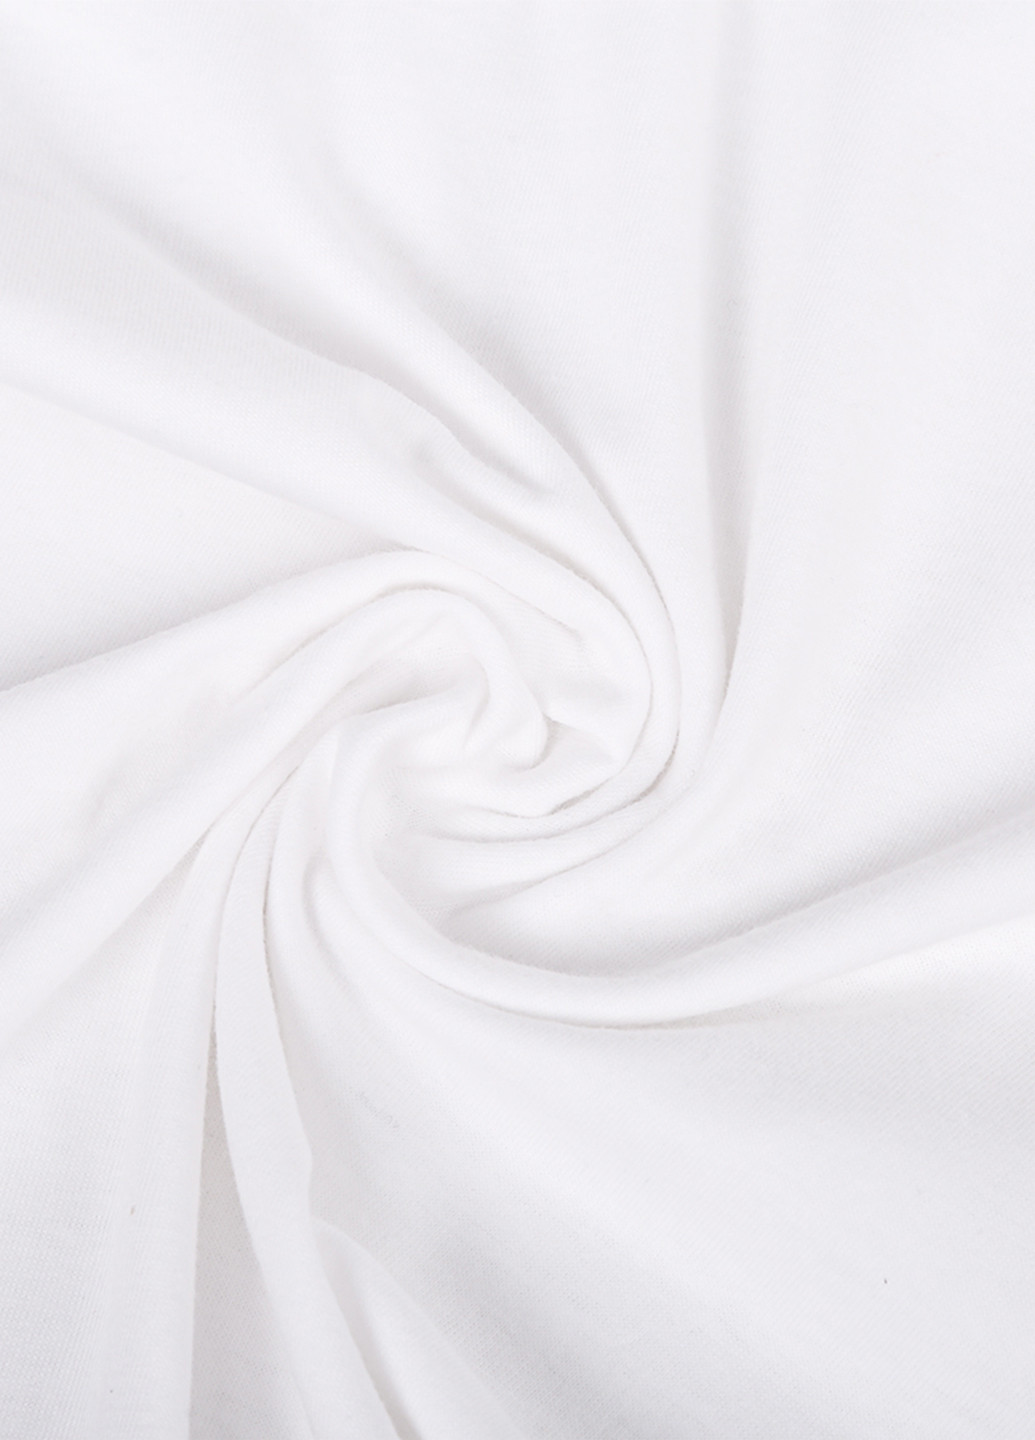 Белая демисезонная футболка детская fortnite (фортнайт) белый (9224-1194) 164 см MobiPrint